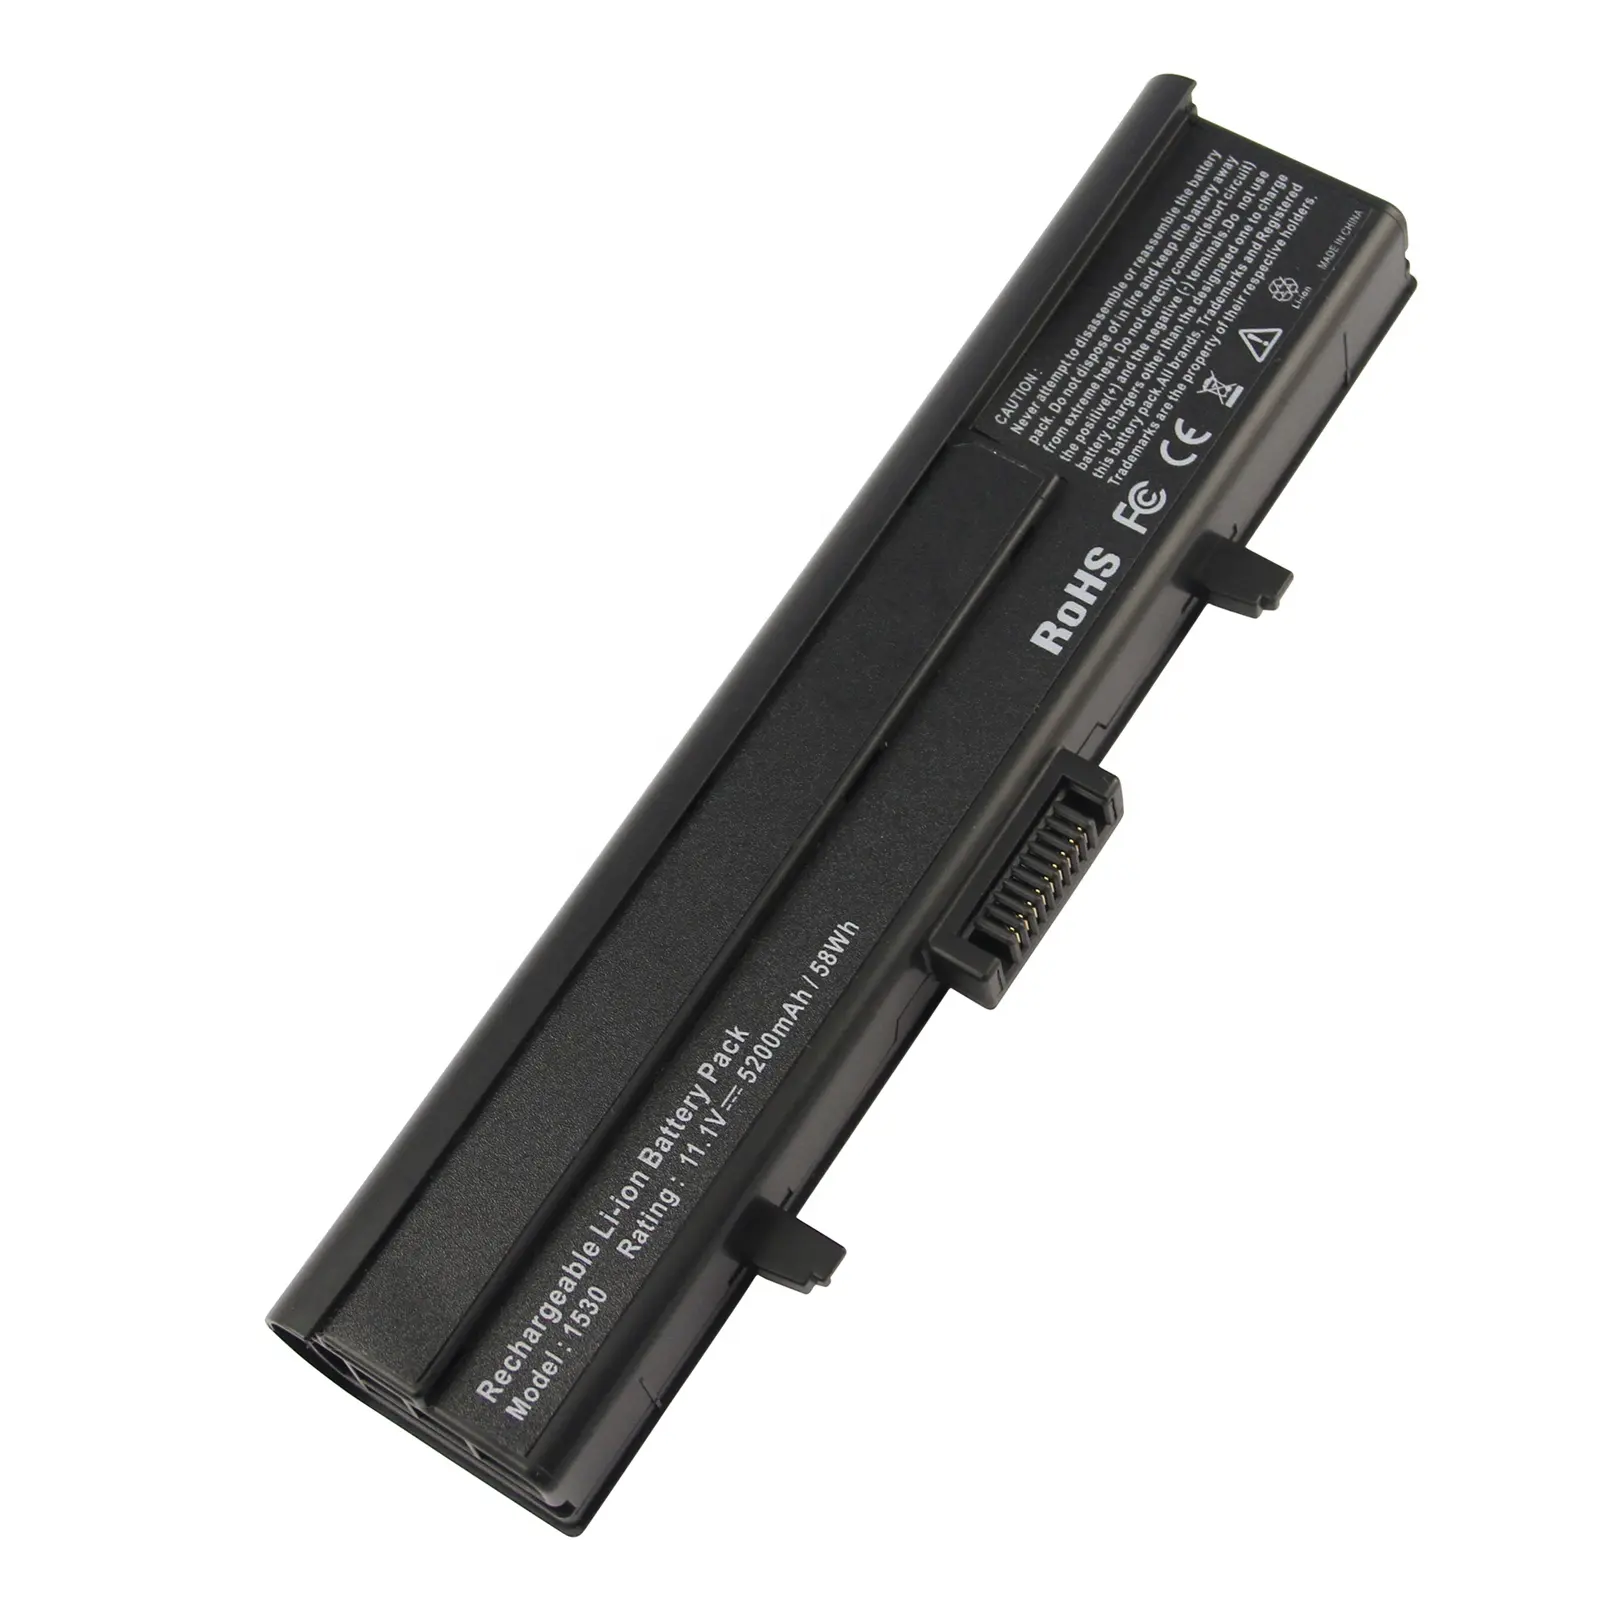 Dell XPS M1530 1530 HG307 312-0664 TK330 RN894 XT828 RU028 11.1V 5200mah मानक लैपटॉप बैटरी के लिए रिचार्जेबल बैटरी